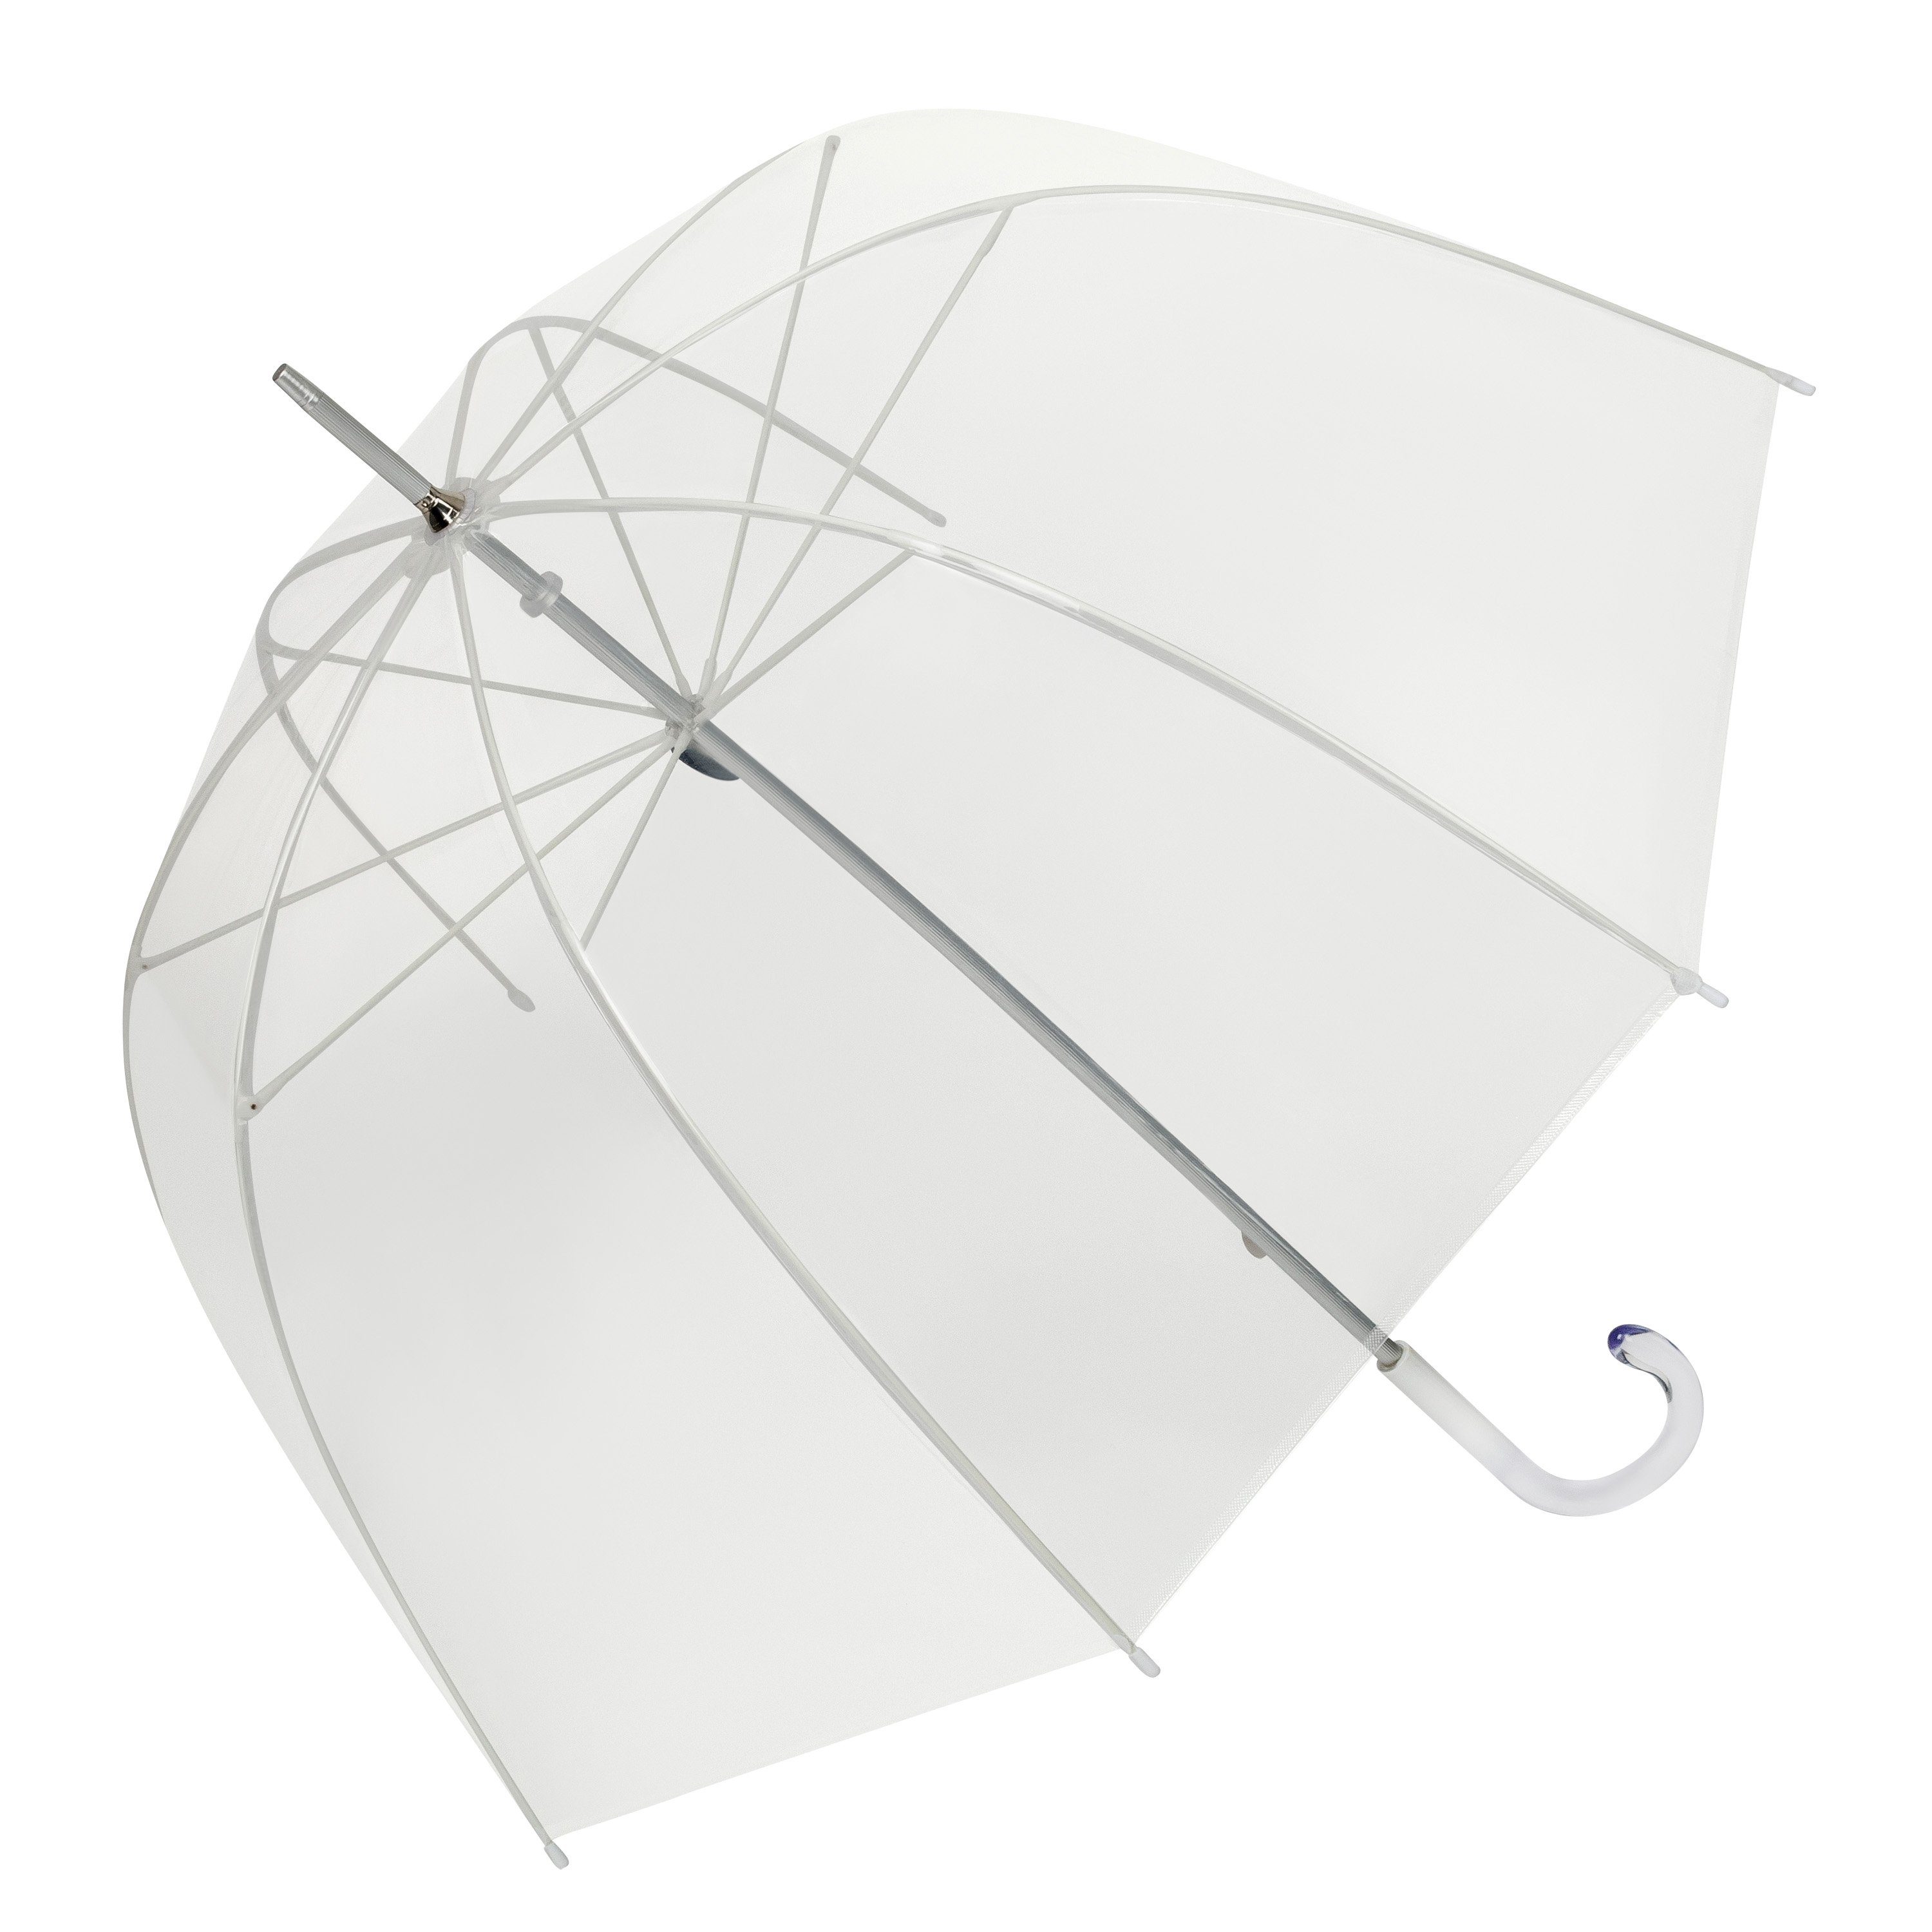 Regenschirme » Mit trendy Schirmen dem Regen trotzen | OTTO